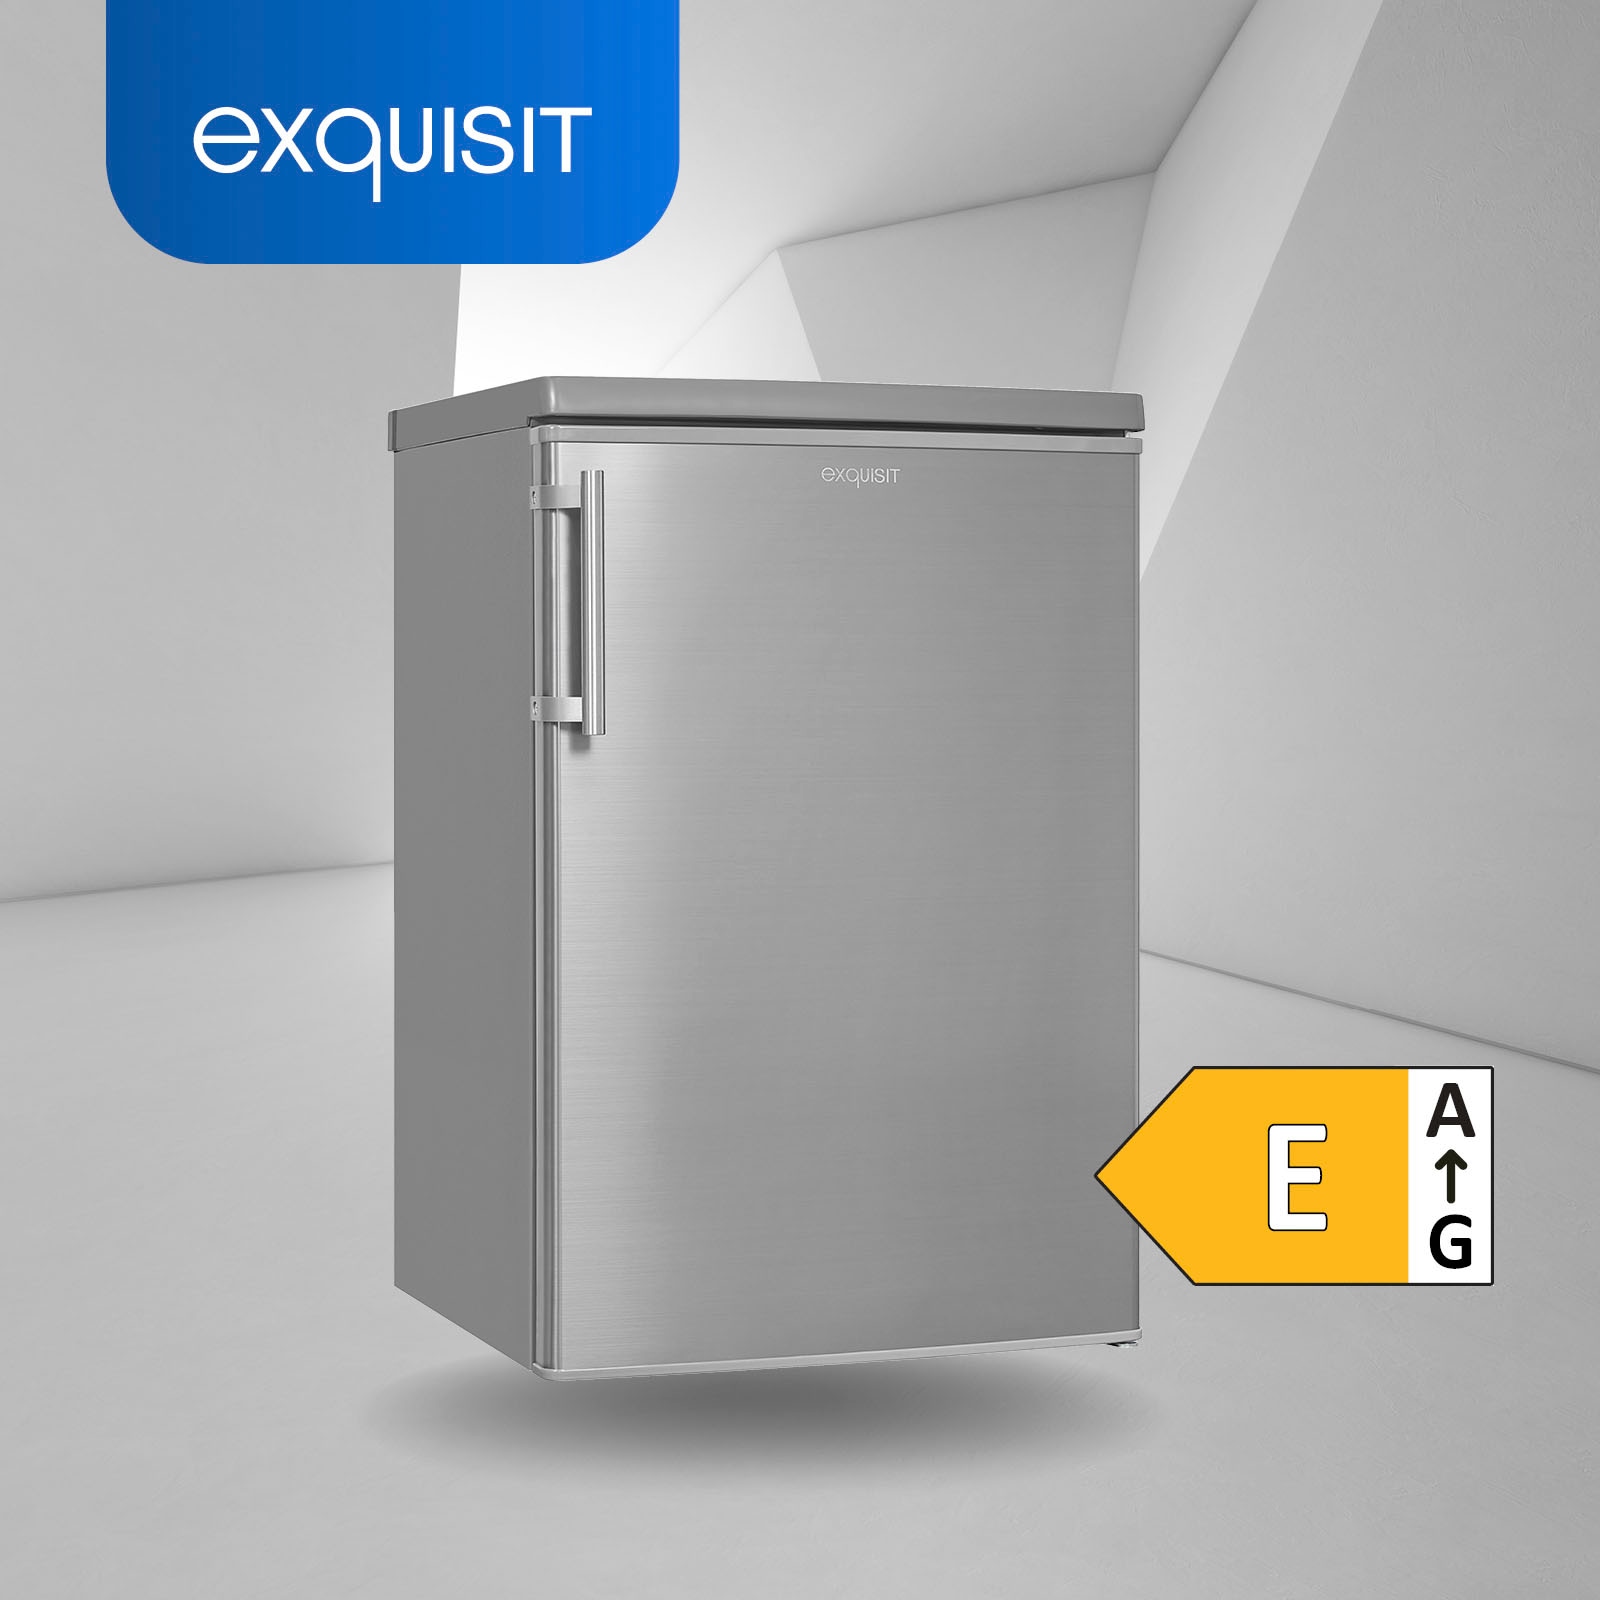 exquisit Kühlschrank, hoch, inoxlook, 85,5 cm breit bei KS16-4-HE-040E 55,0 OTTO cm jetzt